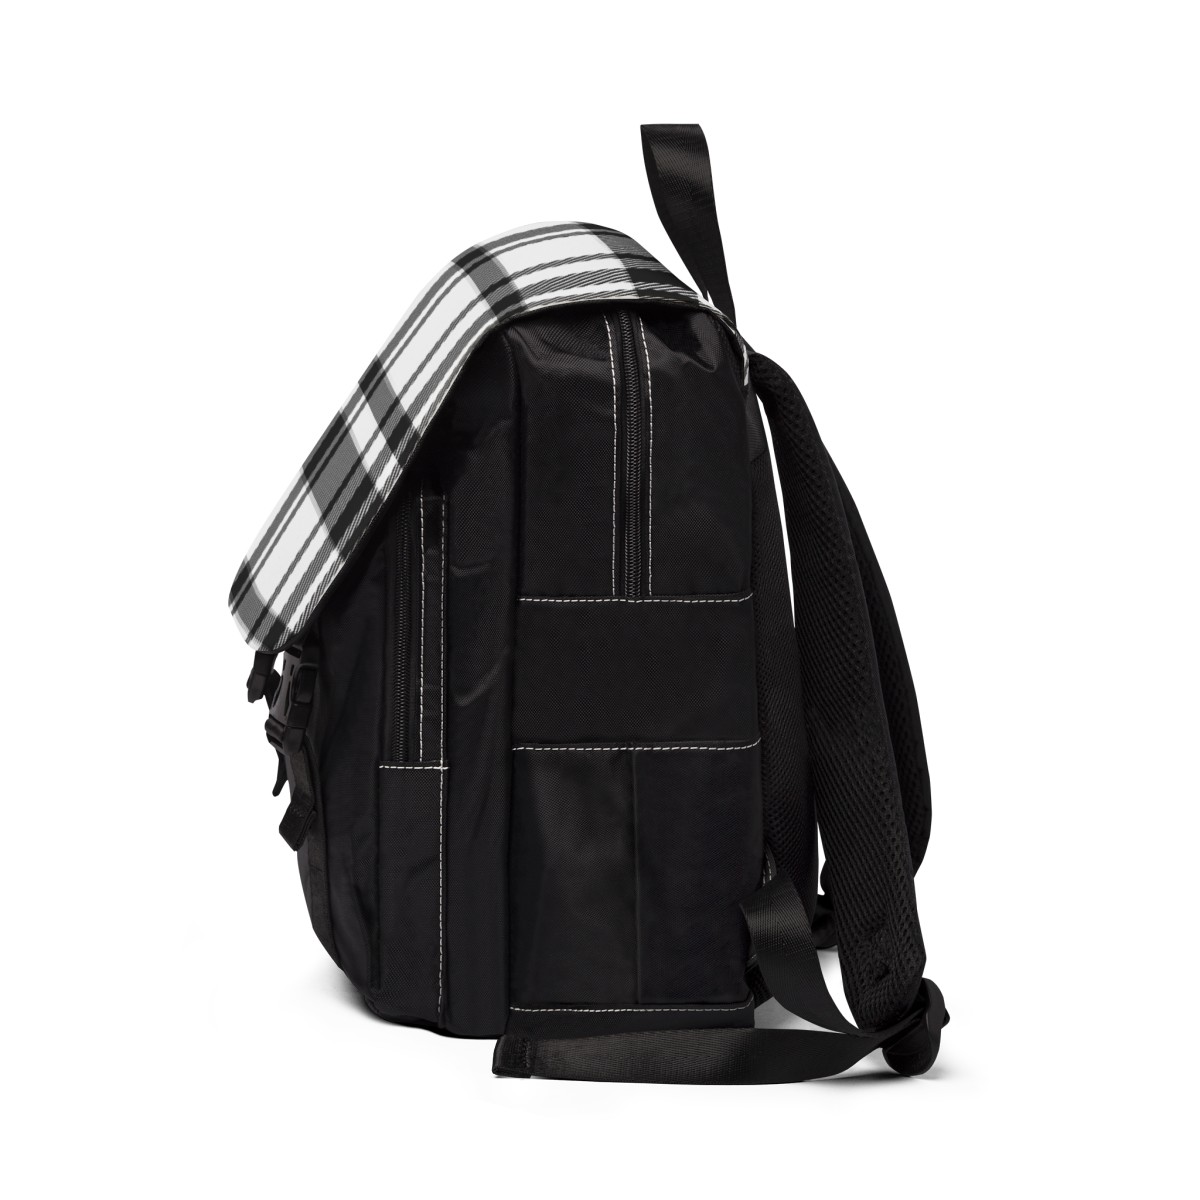 Unisex Backpack Plaid Black White product thumbnail image